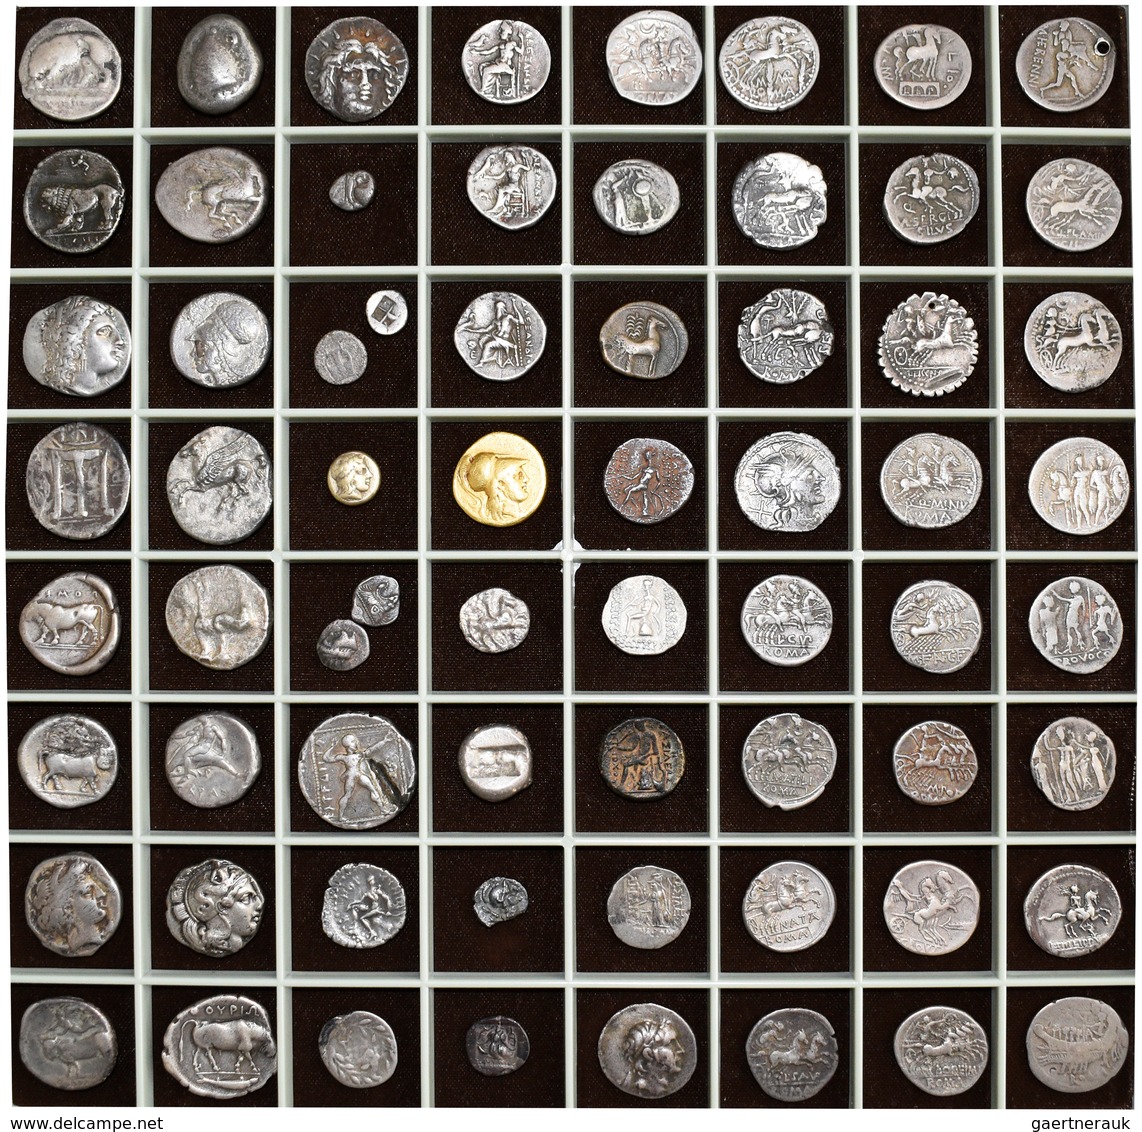 Antike: Eine auf 14 Schuber verteilten Sammlung von insgesamt 720 antiken Münzen: Griechische Münzen